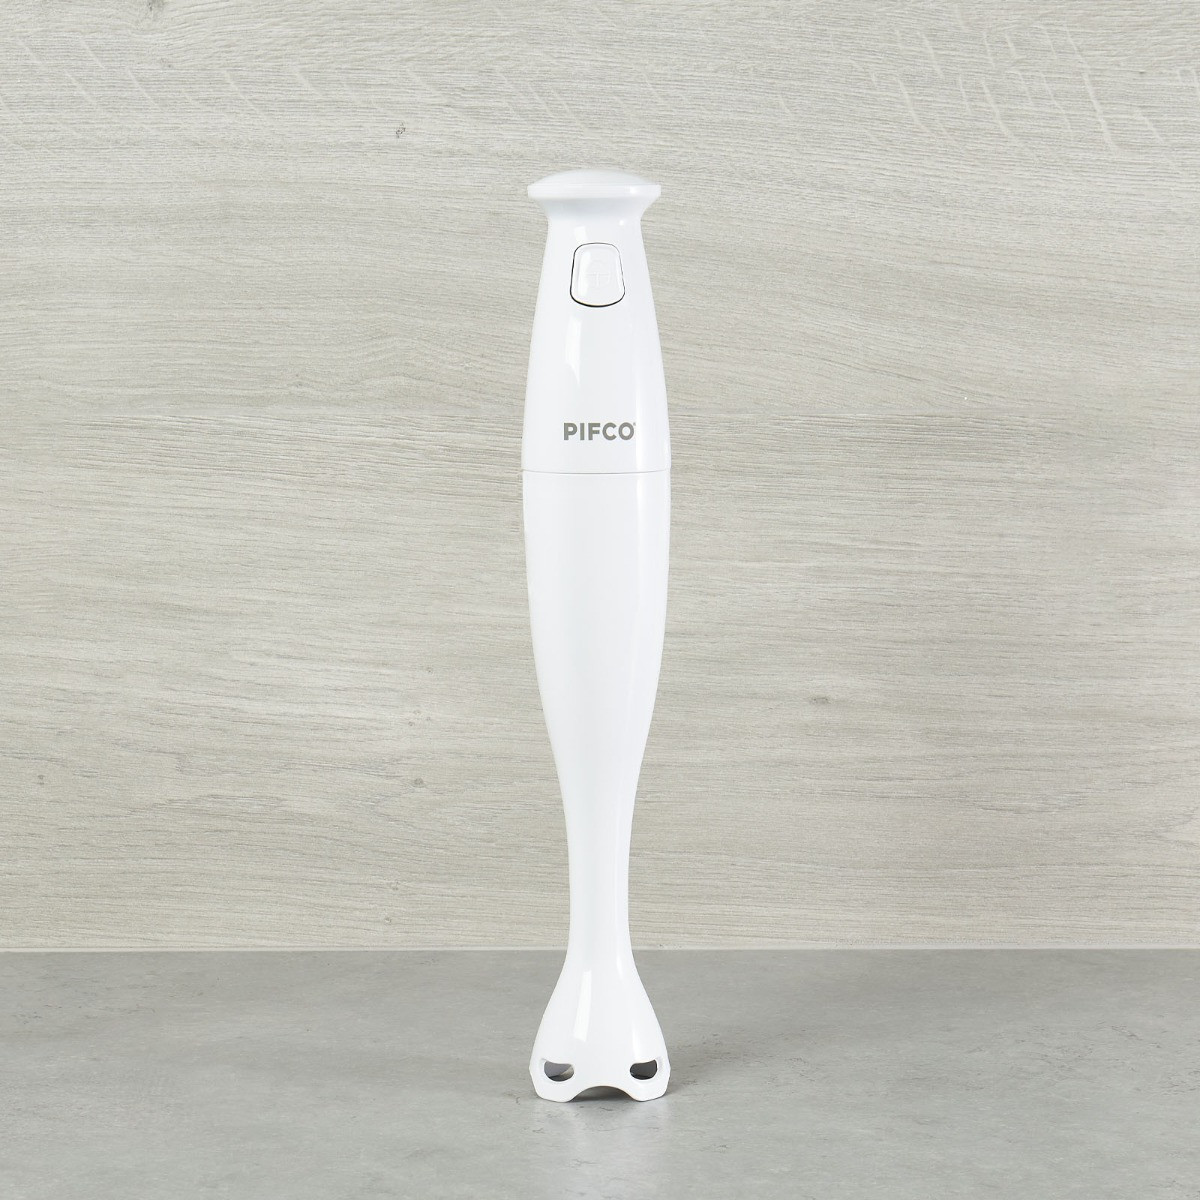 PIFCO Essentials Stick Blender - White>